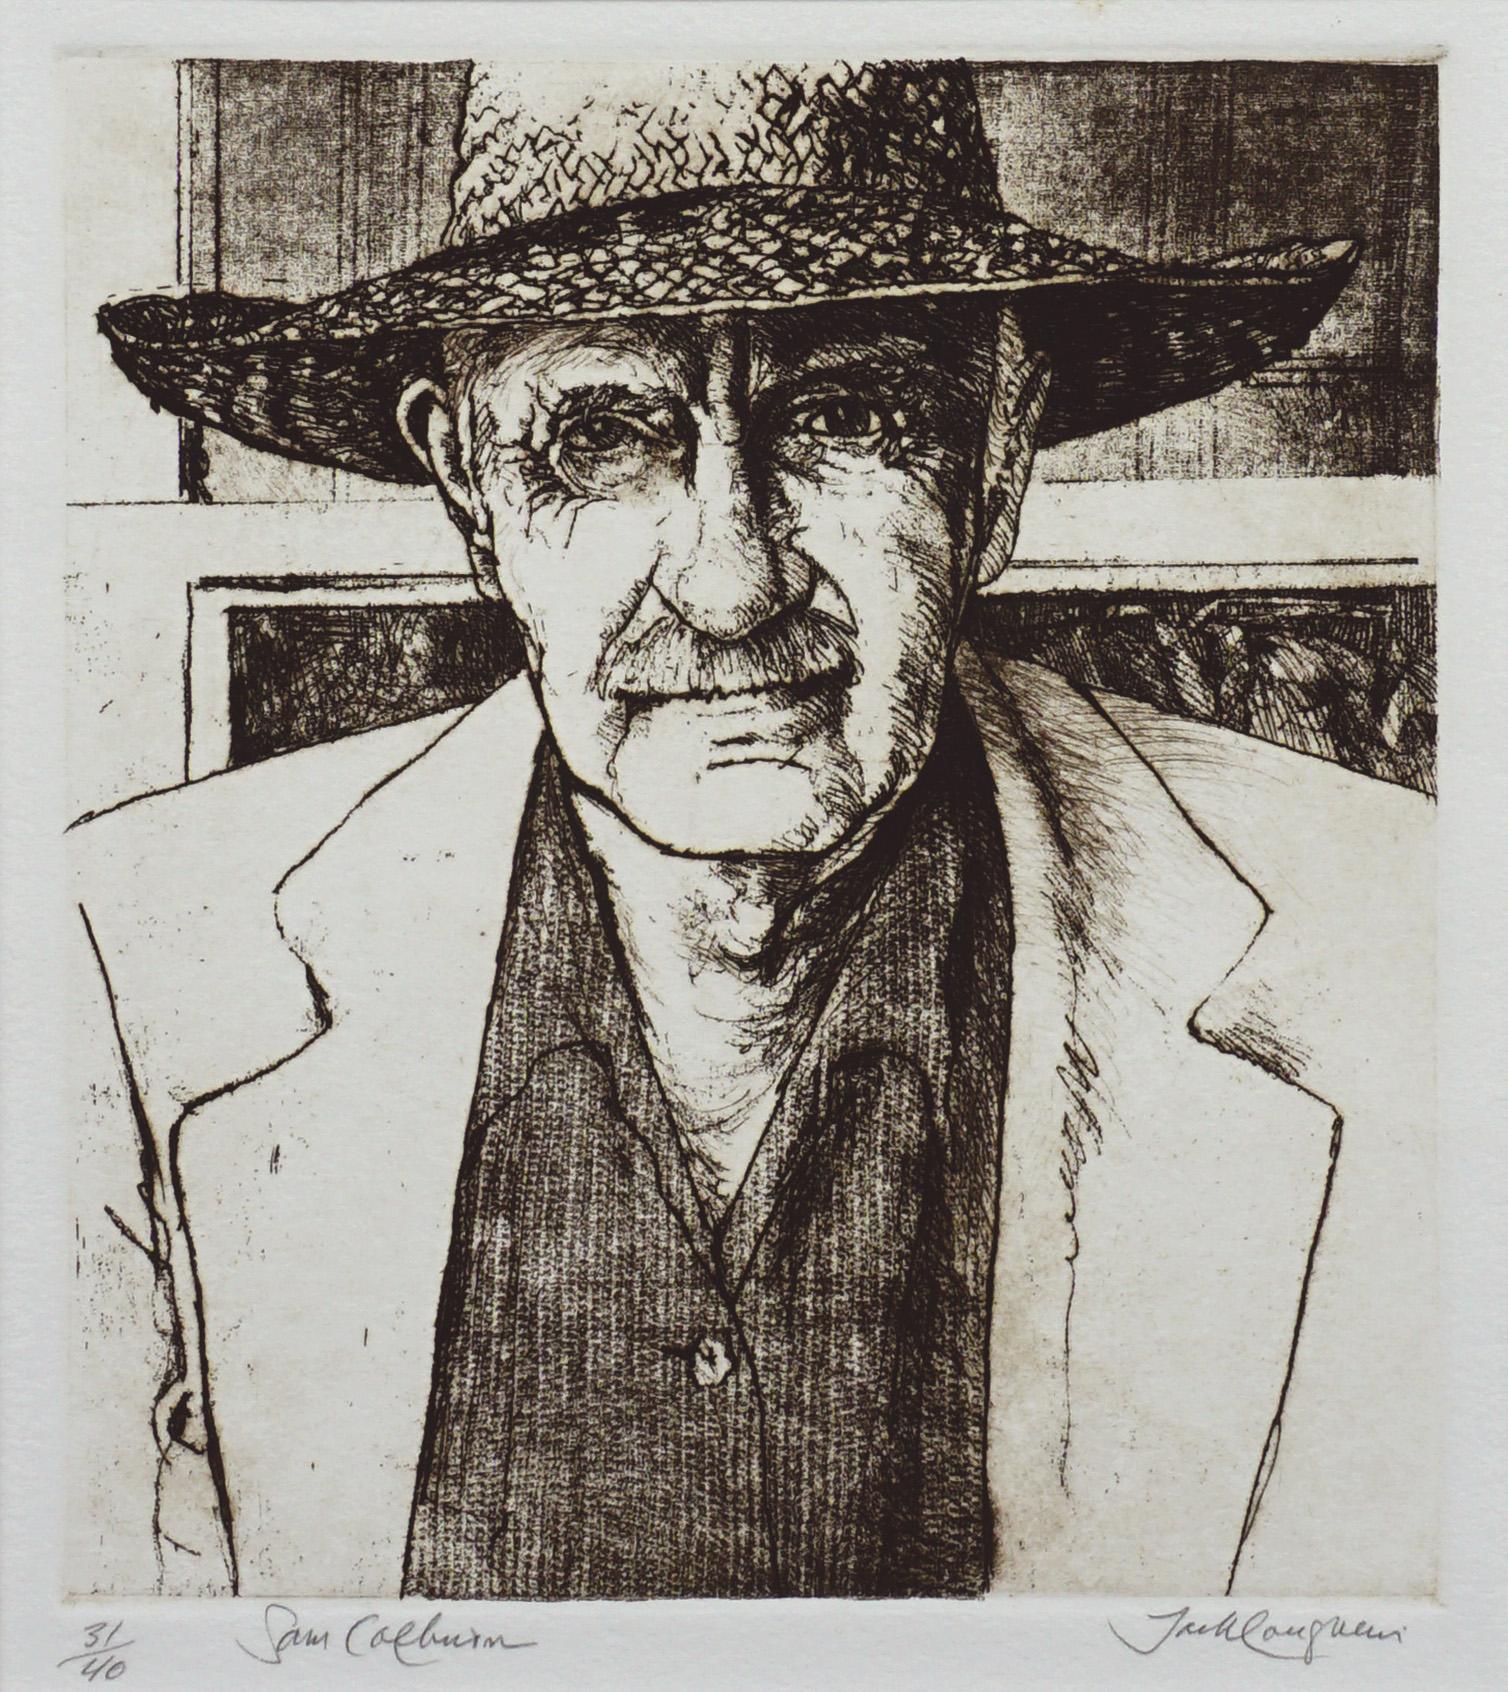 Portrait de l'artiste de Carmel Sam Colburn, lithographie réaliste en édition limitée signée  - Print de Jack Coughlin